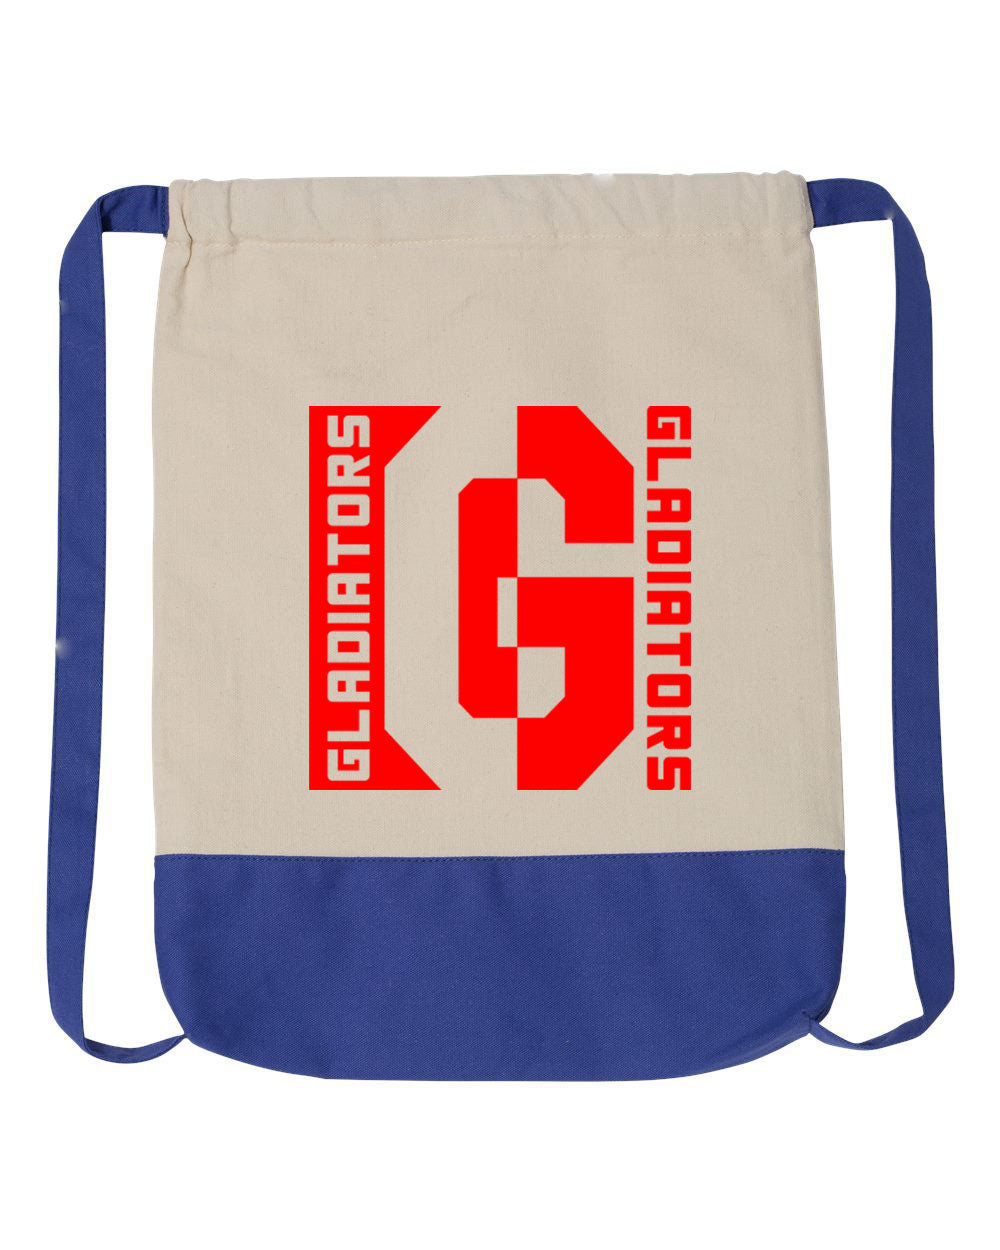 Goshen School design 5 Drawstring Bag